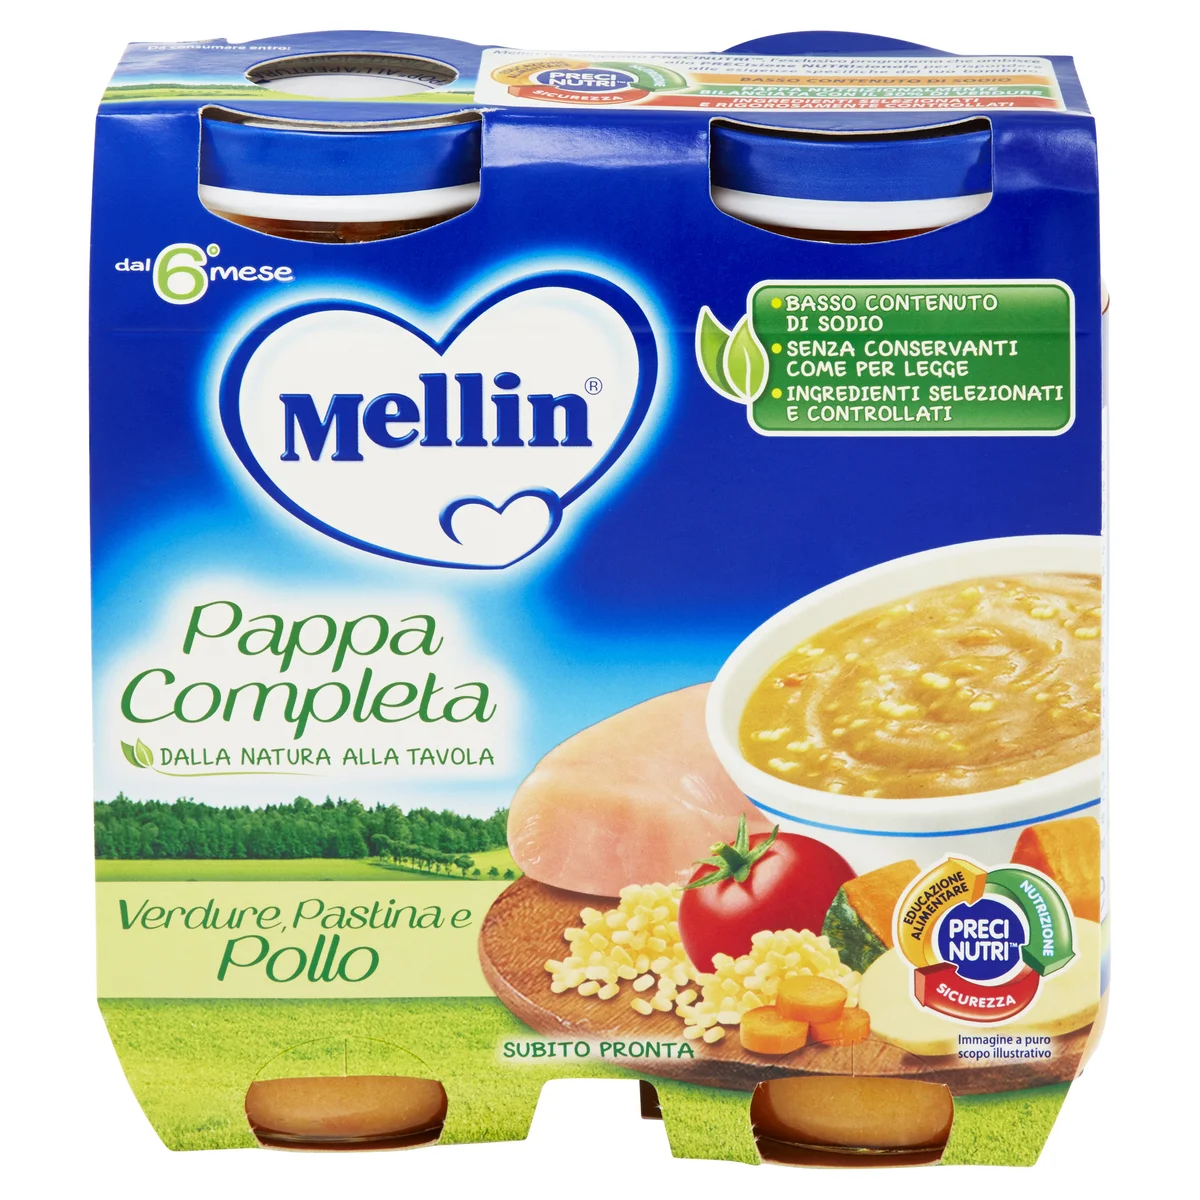 Mellin Pappa Completa Verdure, Pastina e Pollo 2 x 250 g